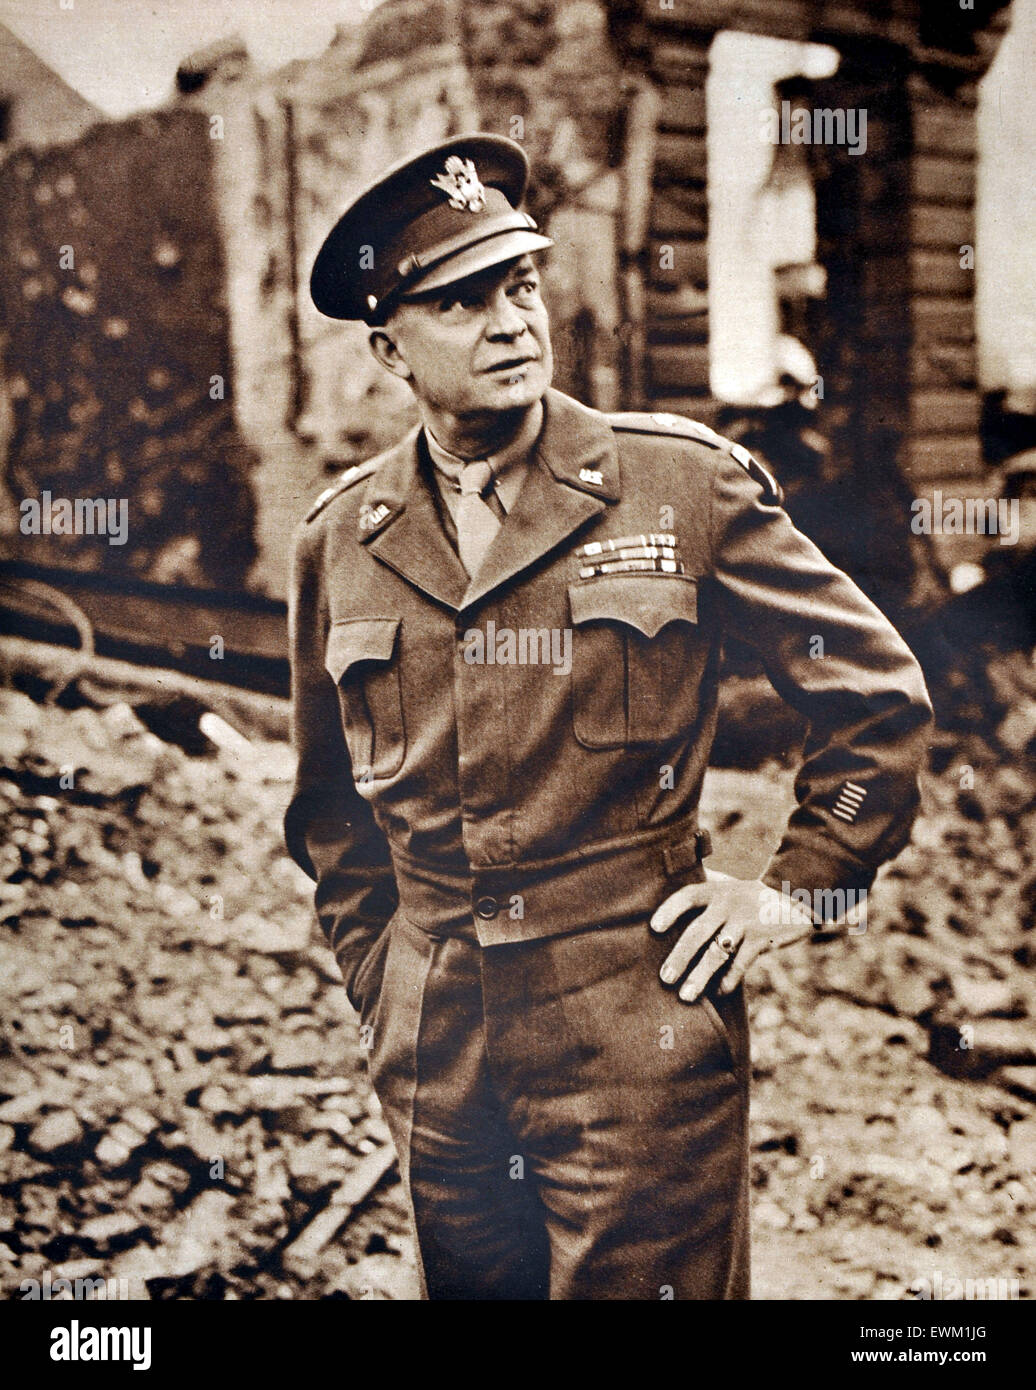 Dwight D. Eisenhower l'image dans la zone bombardée de Londres vers 1944 illustré de la guerre. La Grande-Bretagne. Dwight David Eisenhower 'Ike (1890 - 1969) général de l'armée américaine et homme d'État qui a été le 34e président des États-Unis de 1953 à 1961 Banque D'Images